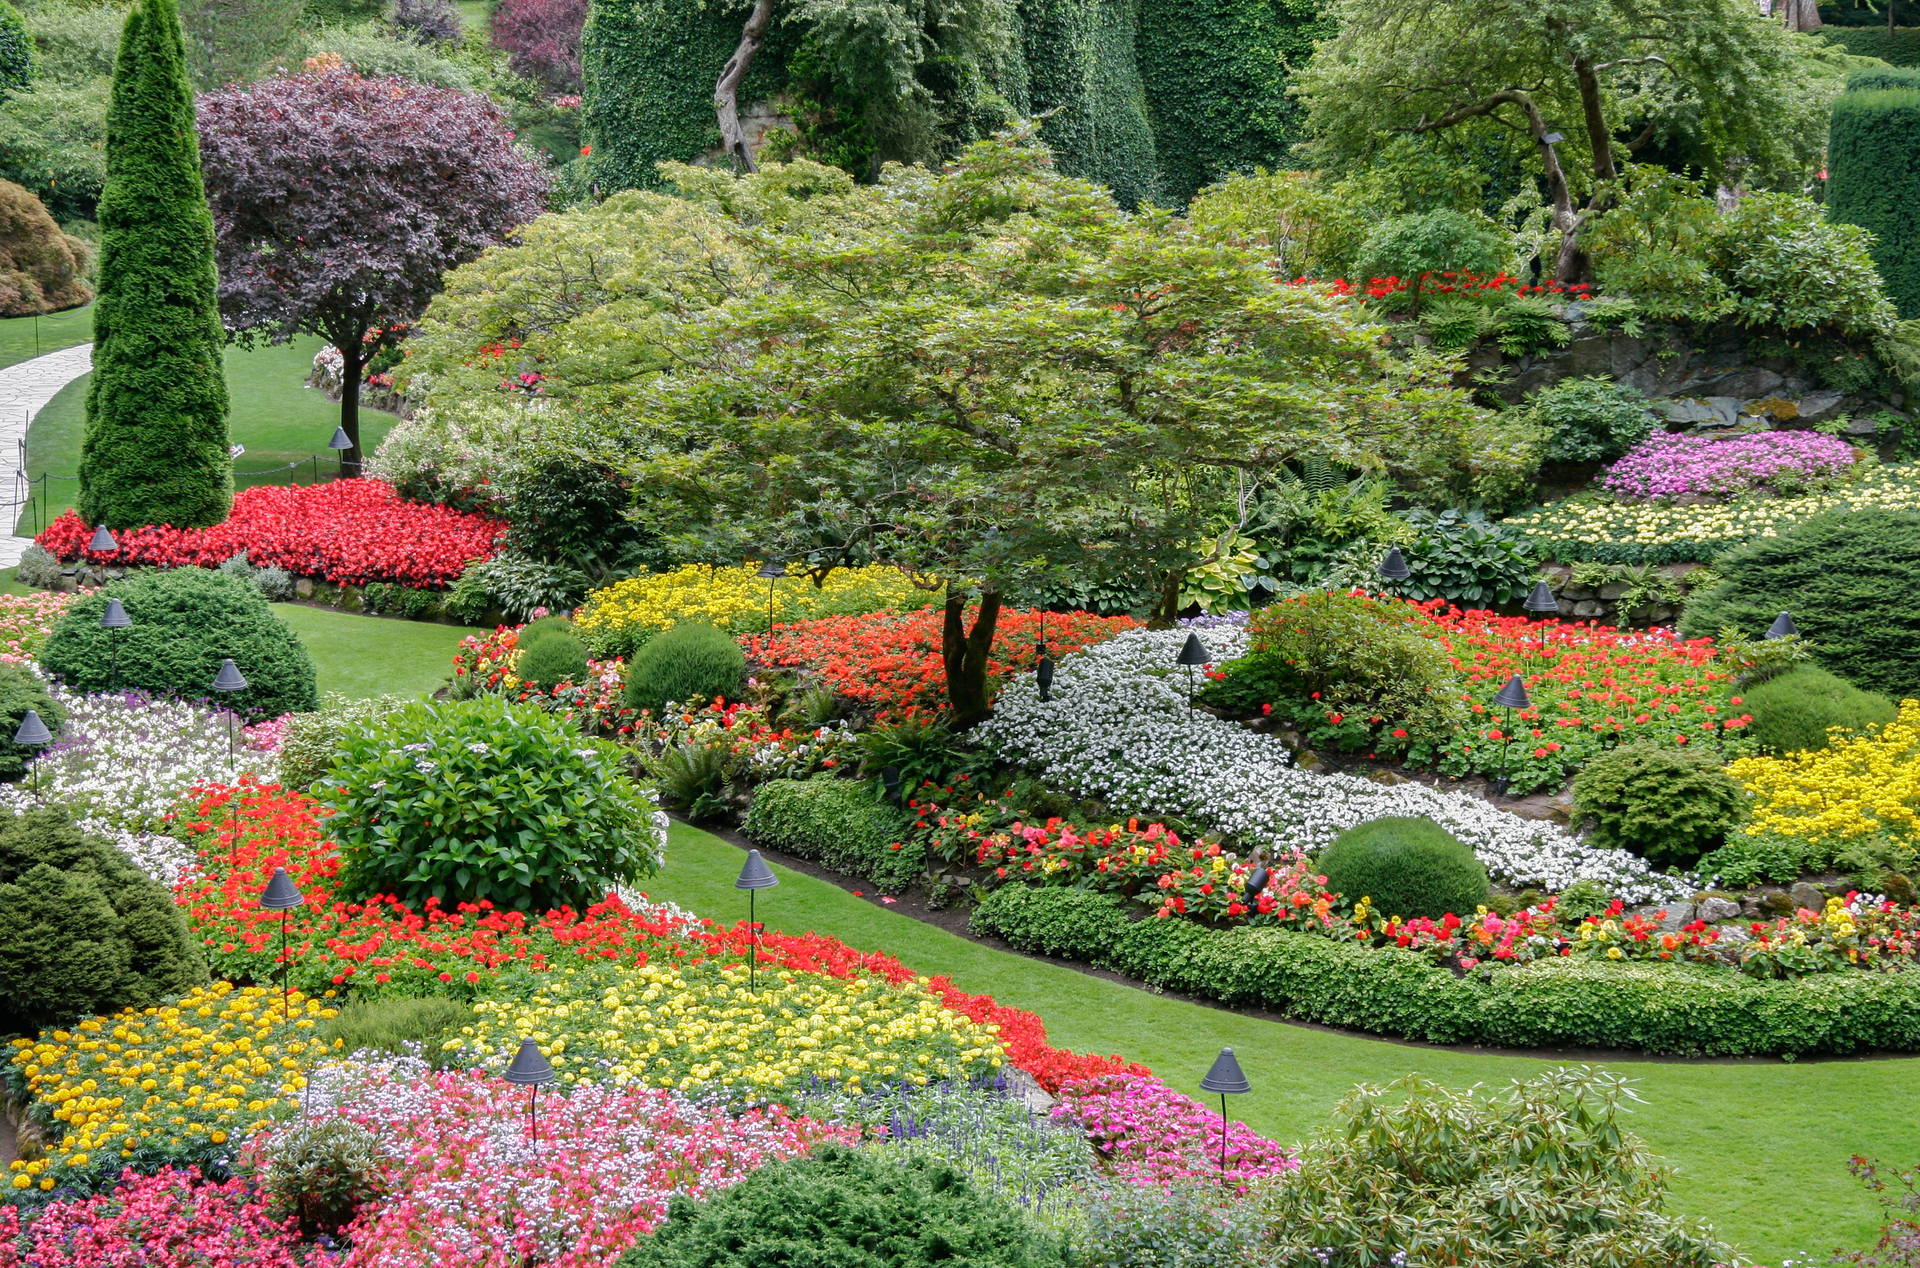 Na naszym obrazku zobaczysz piękny, kolorowy ogród, w którym kwitną różnorodne kwiaty. Ten piękny krajobraz ogrodu tworzy wspaniałą atmosferę i jest idealnym miejscem do odpoczynku i relaksu. W naszym artykule dowiesz się, jak stworzyć podobny ogród i jakie kwiaty ogrodowe najlepiej się do tego nadają. Przekonaj się, jakie kwiaty ogrodowe będą najlepszym wyborem dla Twojego ogrodu i ciesz się ich pięknem przez cały sezon.